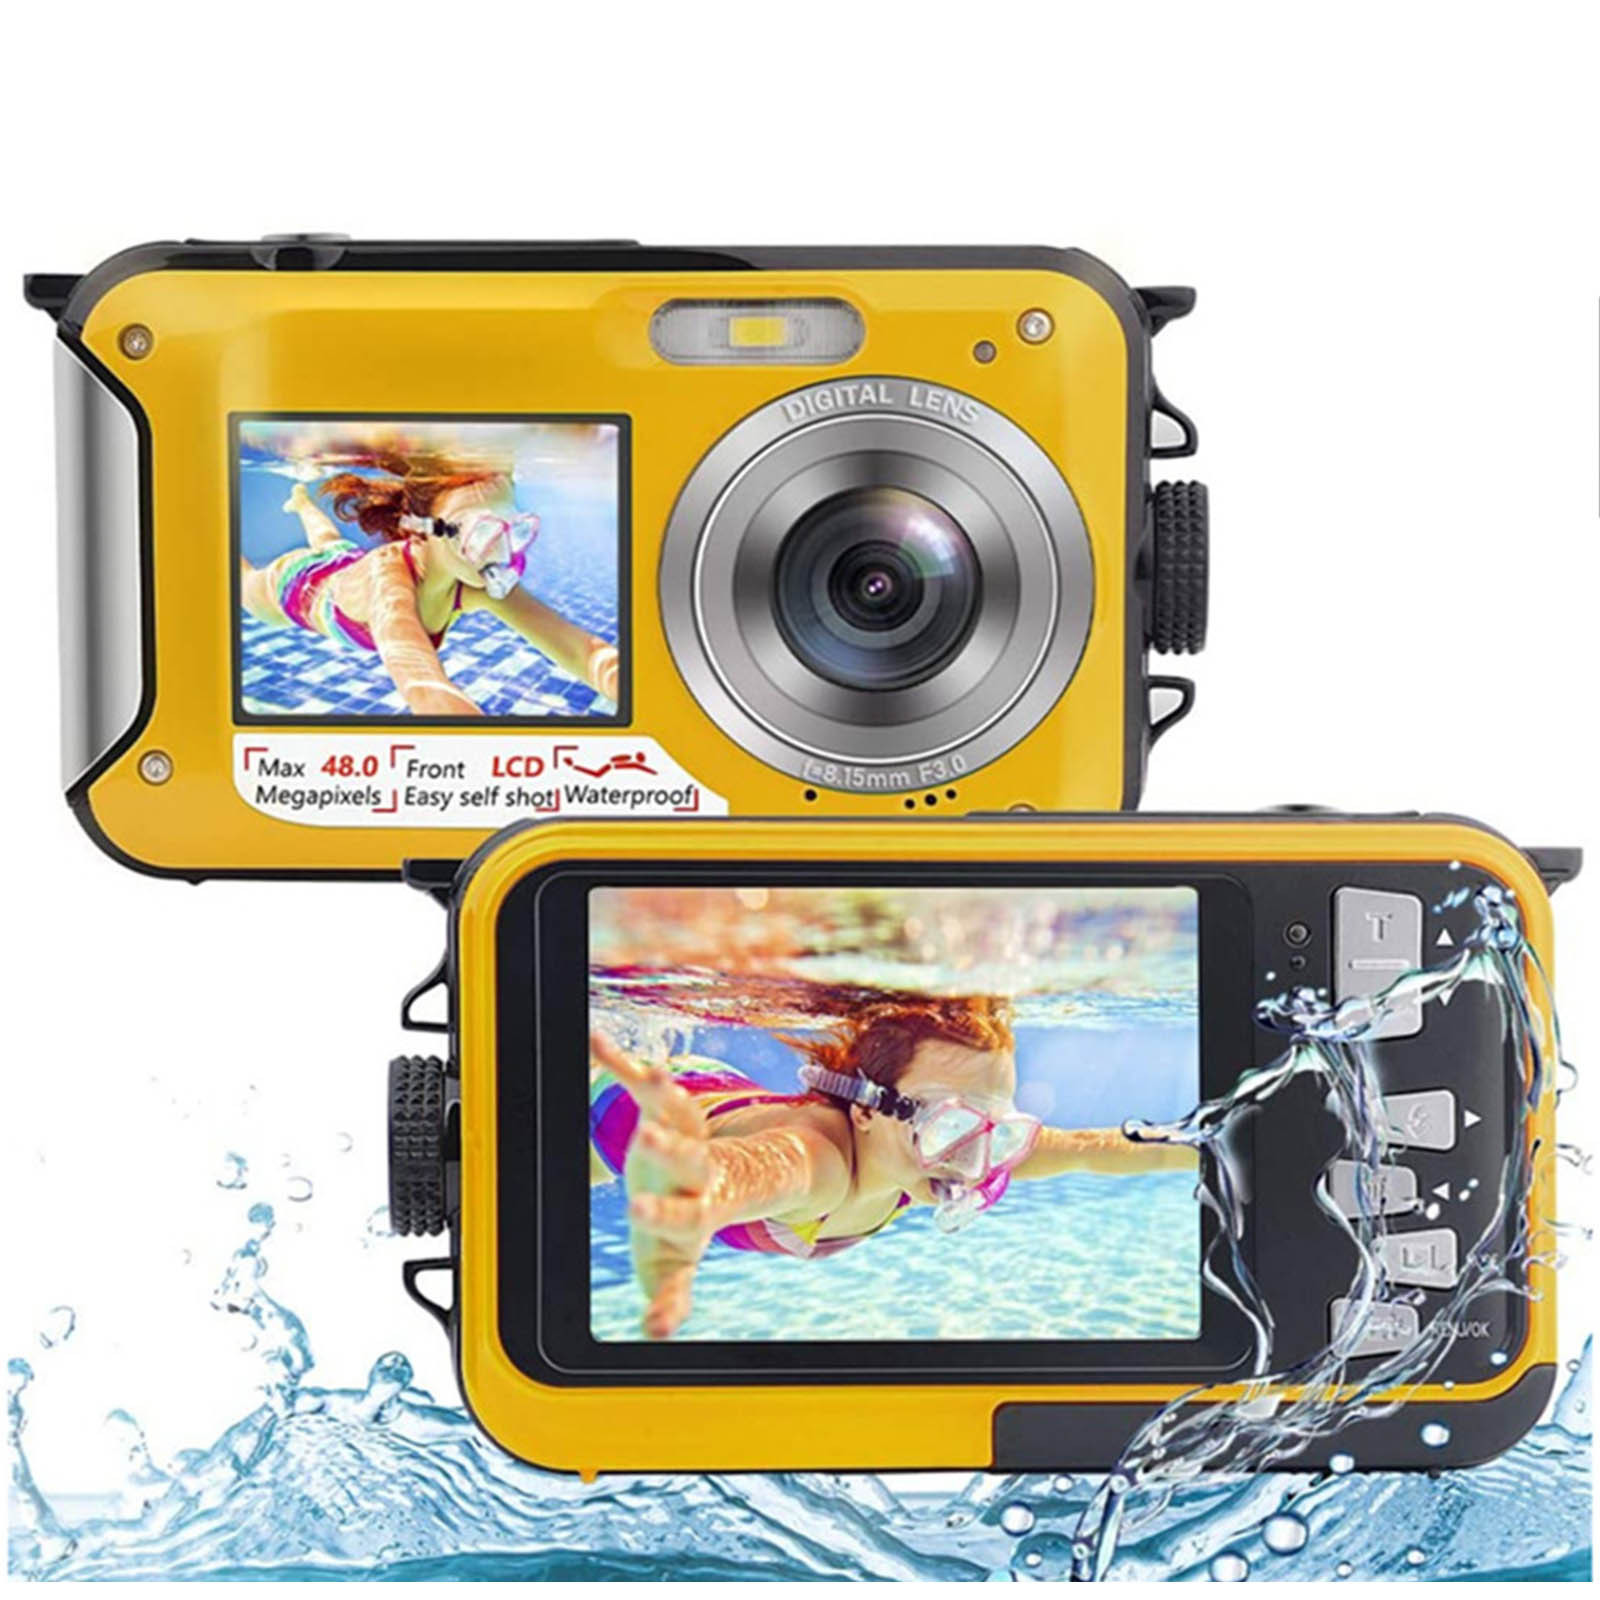 Holiday Savings 2022! Feltree Waterproof Camera Underwater Cameras For Snorkeling Full HD 2.7K 48MP Video Recorder Selfie Dual Screens 10FT 16X Digital Zoom Waterproof Digital Camera Yellow - image 2 of 7